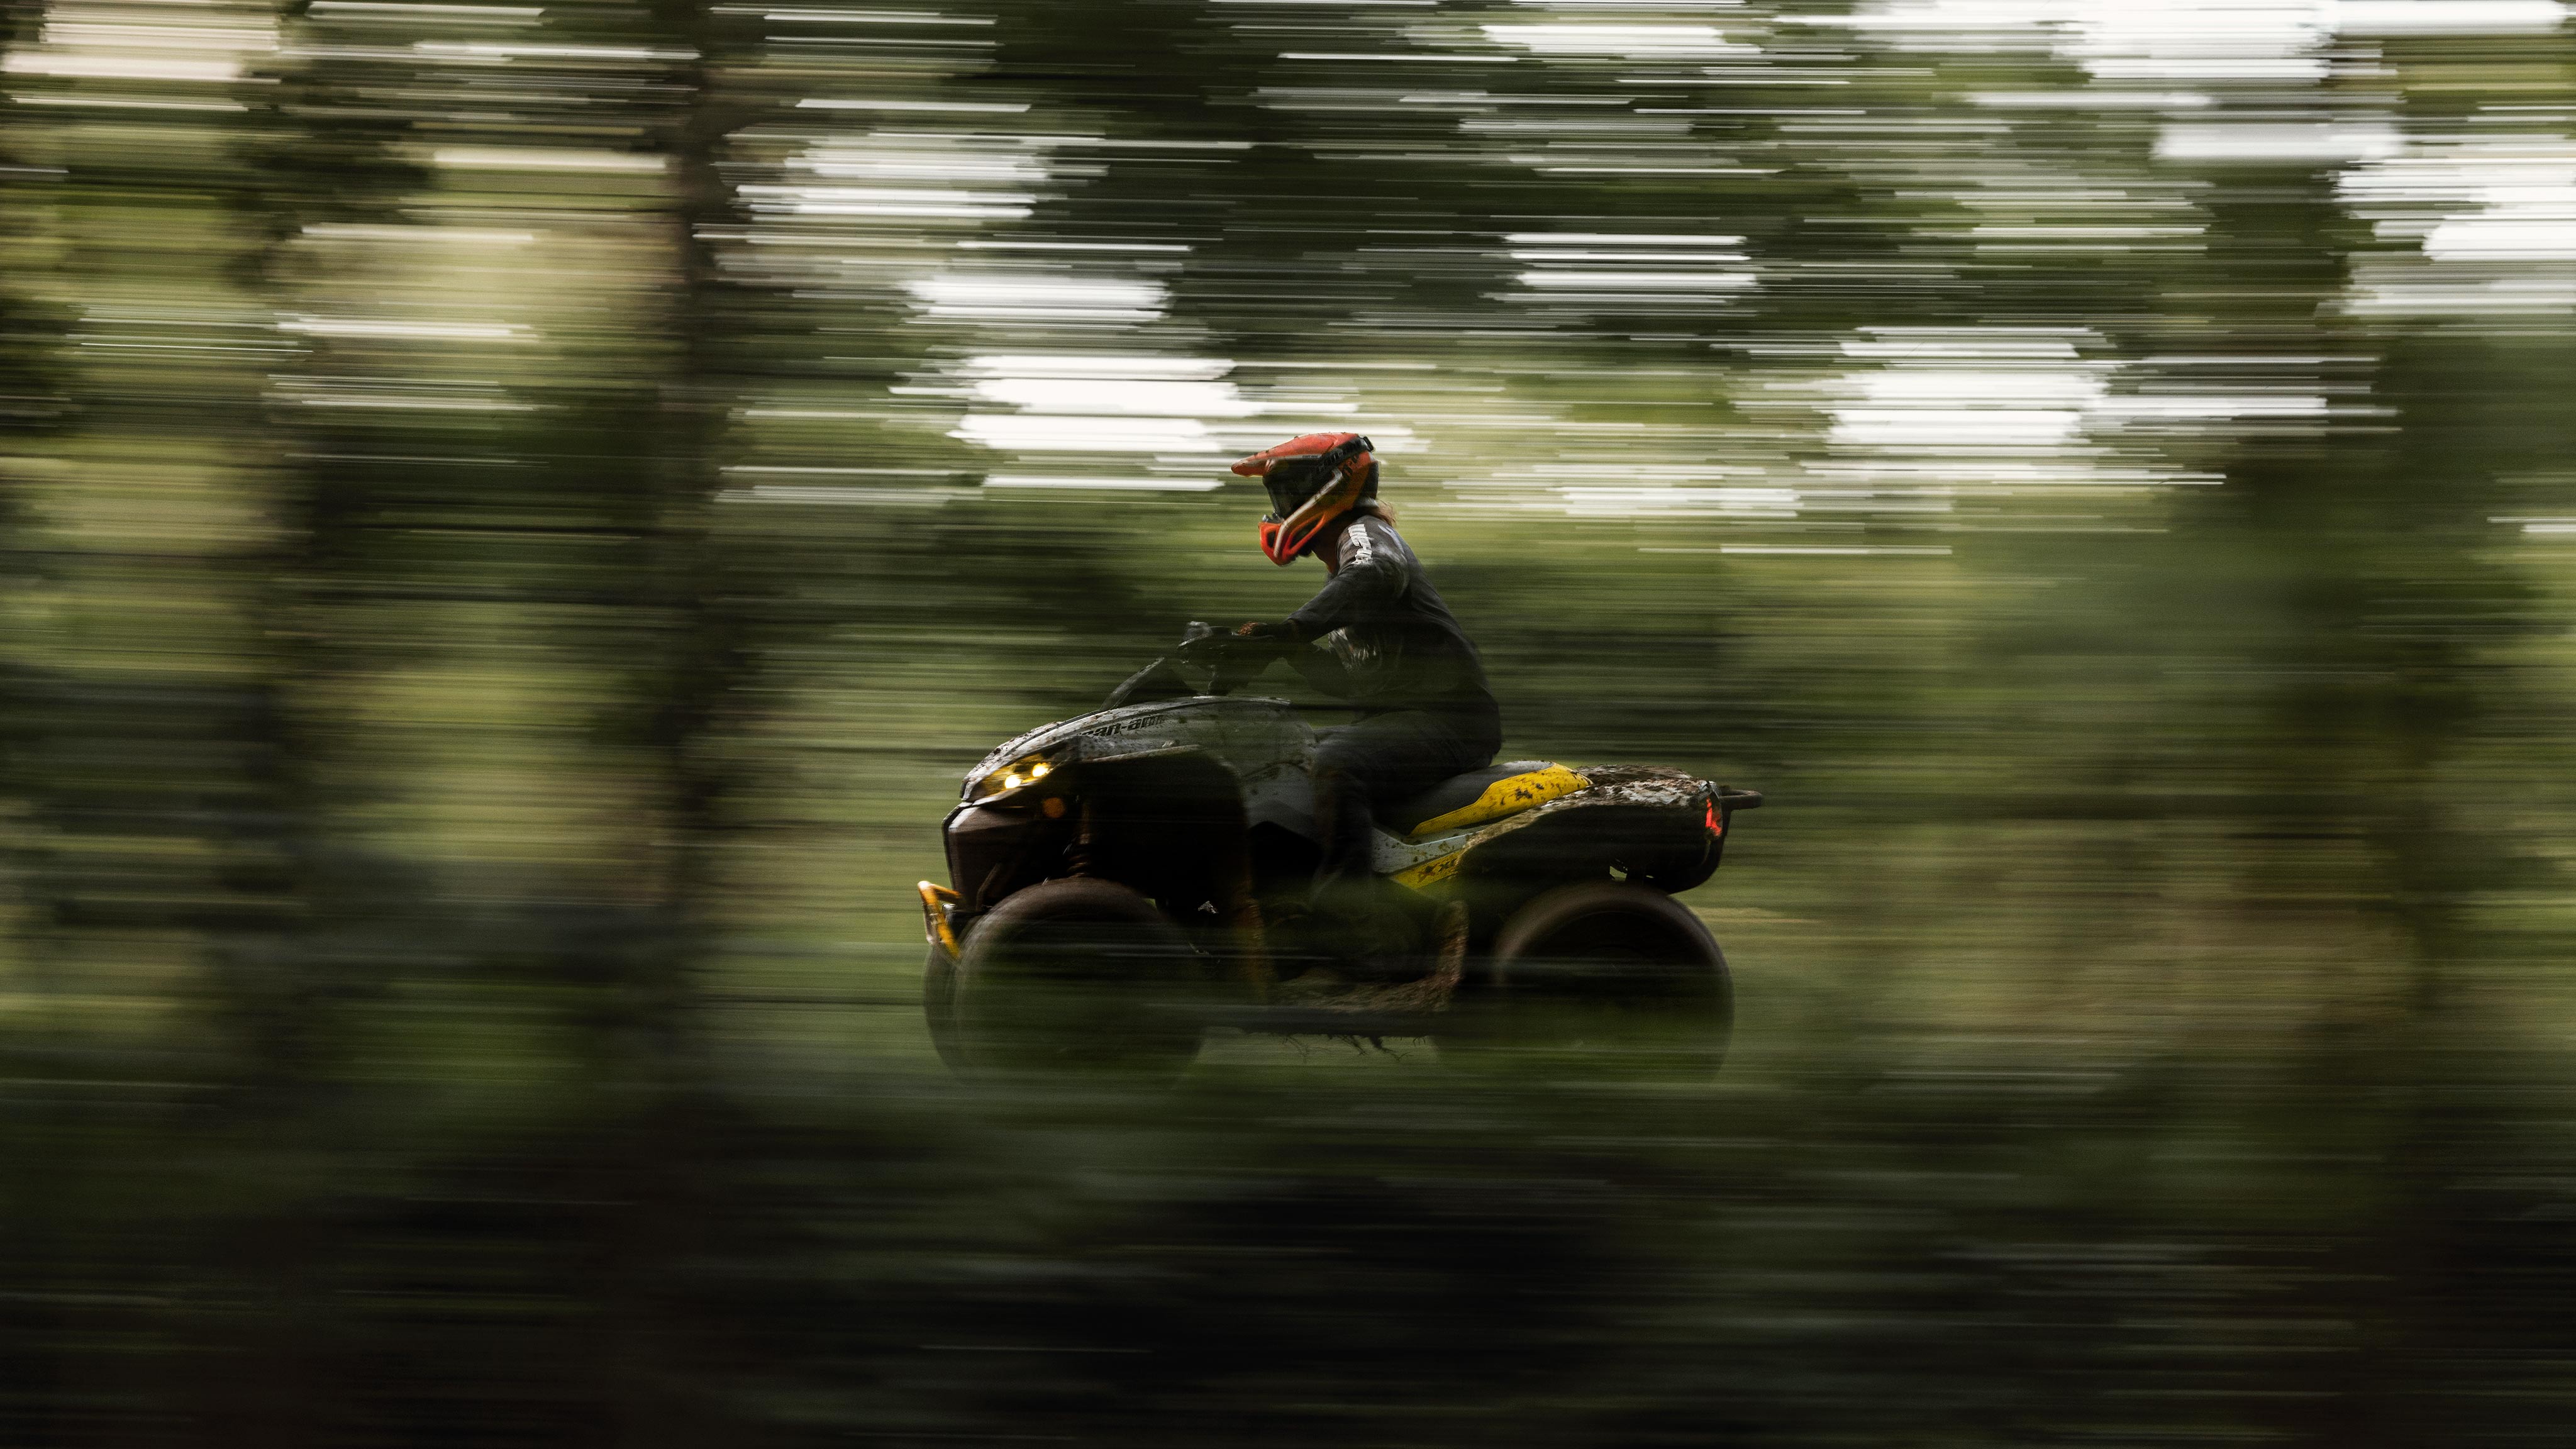 Persoon die rijdt op een Can-Am Outlander ATV met hoge snelheid